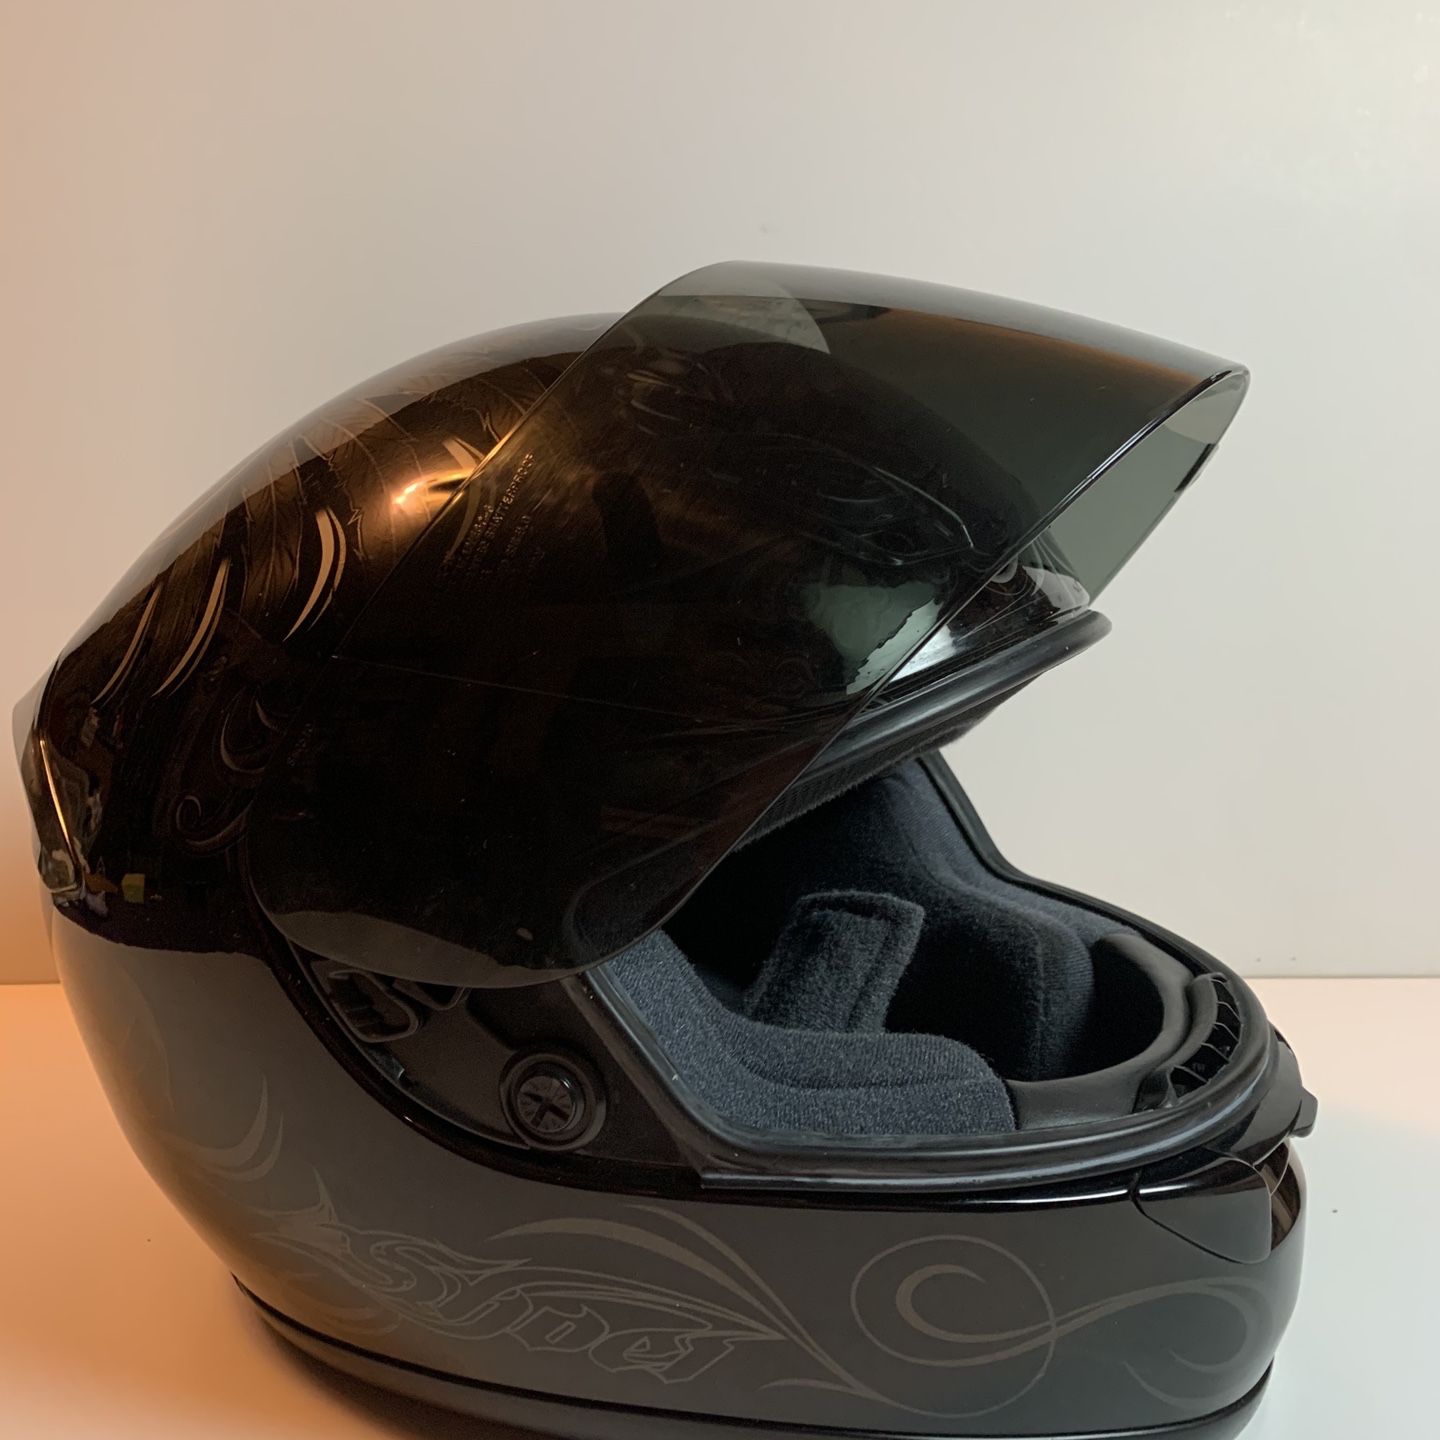 SHOEI RF-1000 black motorcycle bike helmet